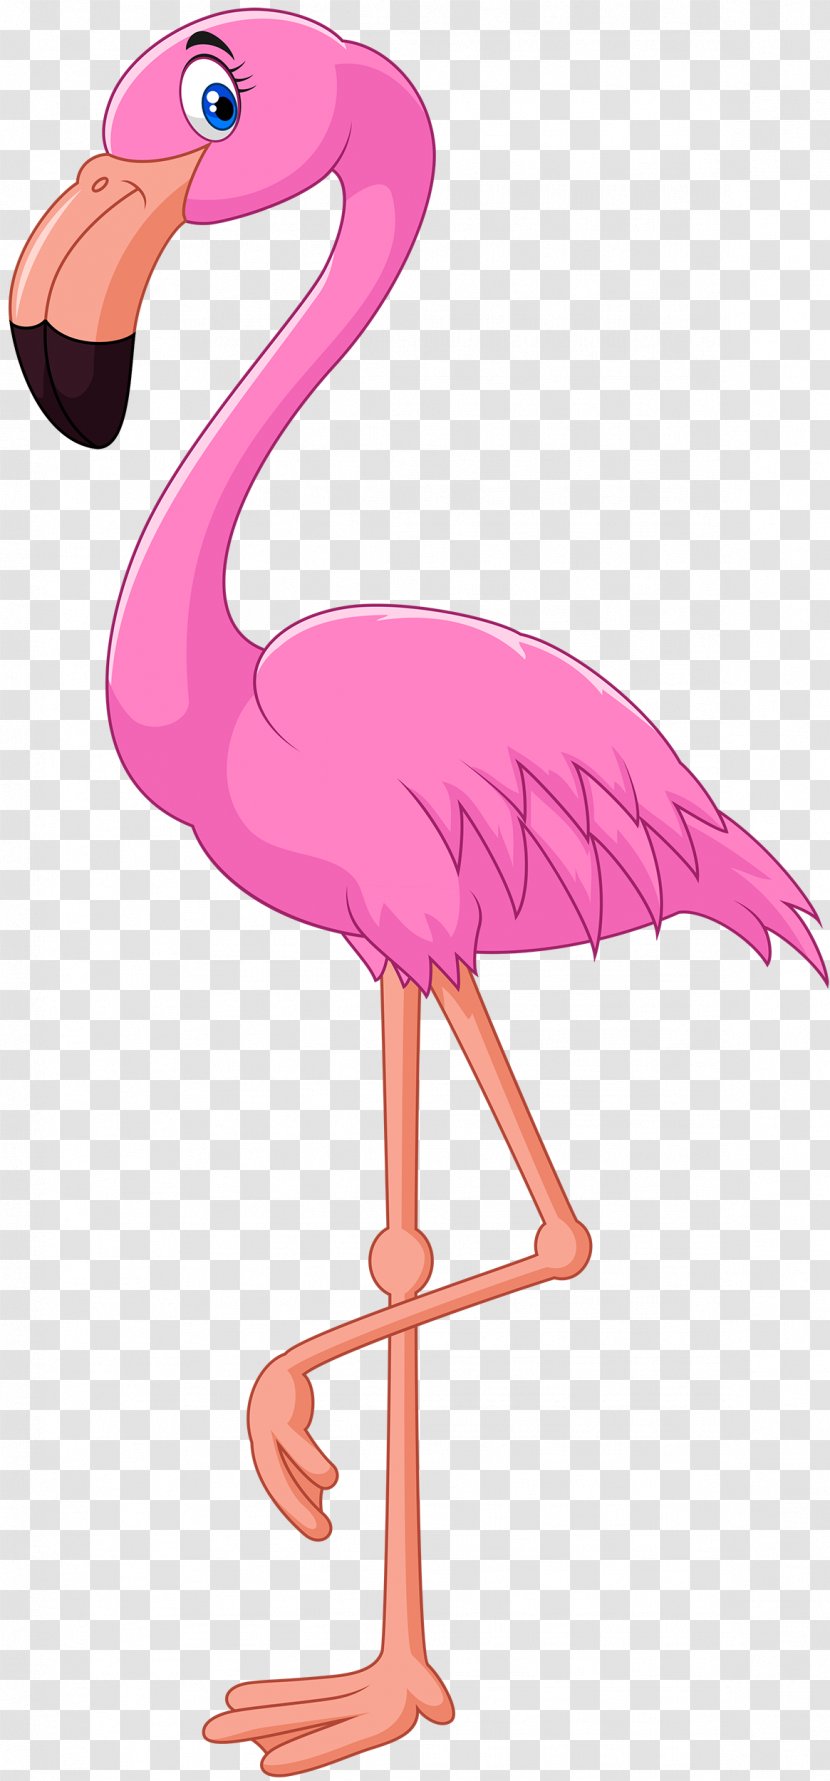 Cartoon Flamingo Bird Illustration Transparent PNG